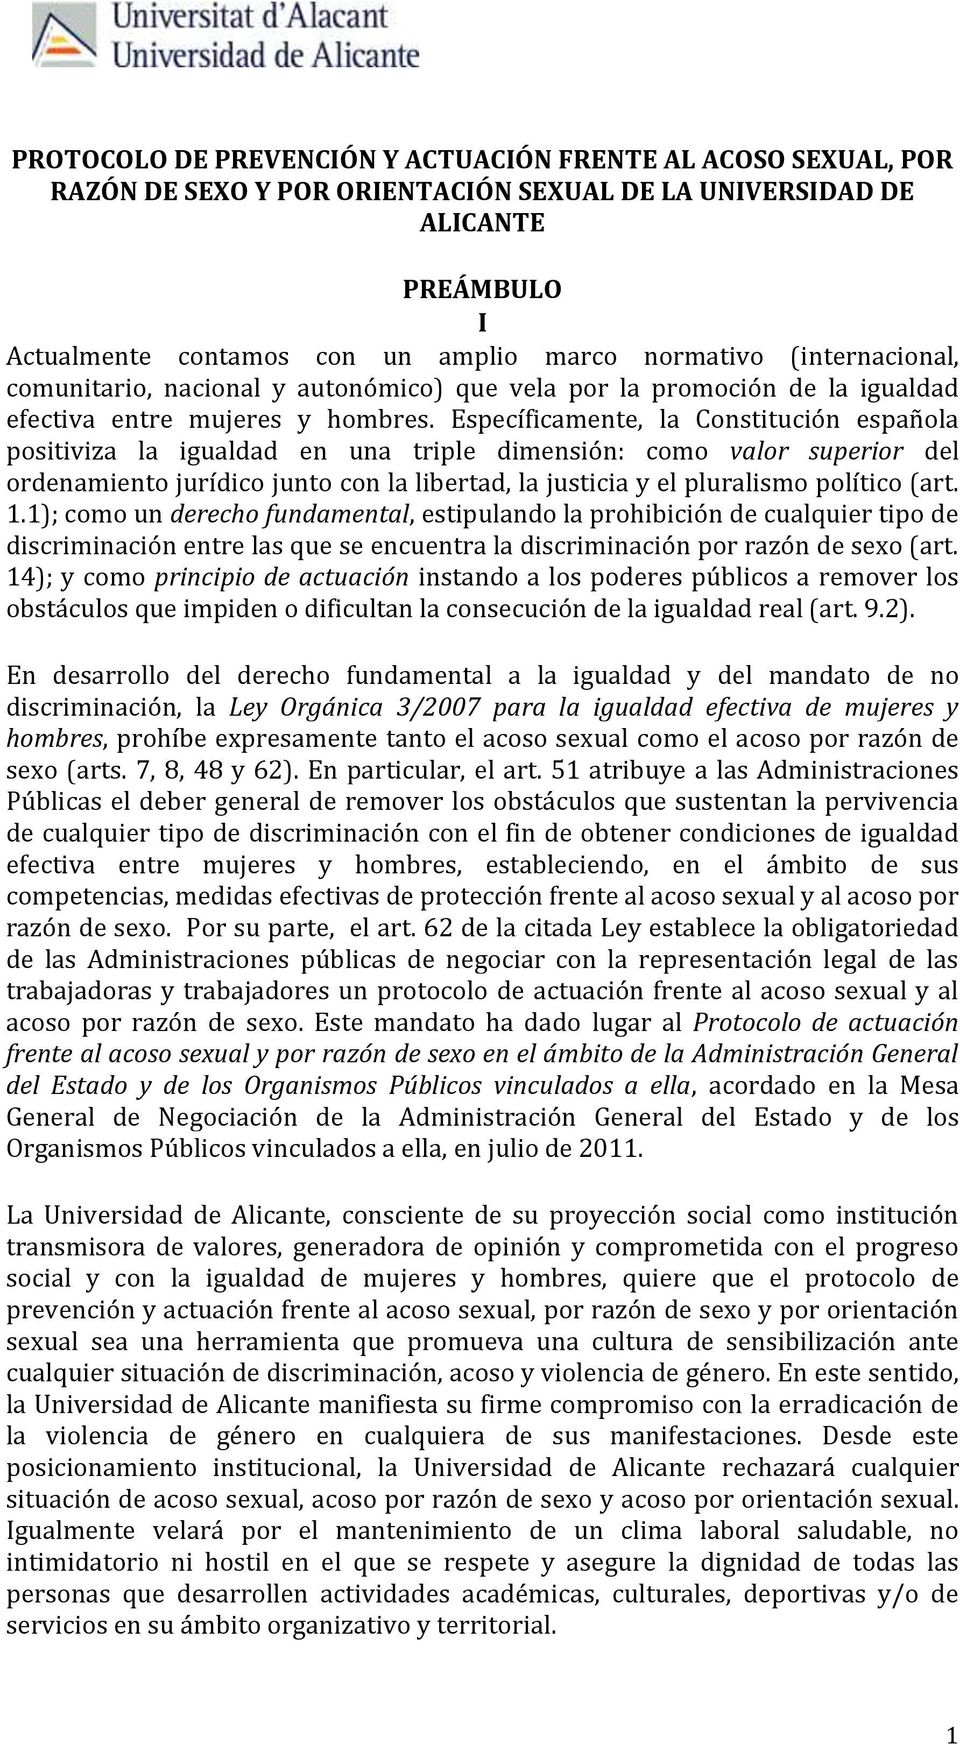 Específicamente, la Constitución española positiviza la igualdad en una triple dimensión: como valor superior del ordenamiento jurídico junto con la libertad, la justicia y el pluralismo político